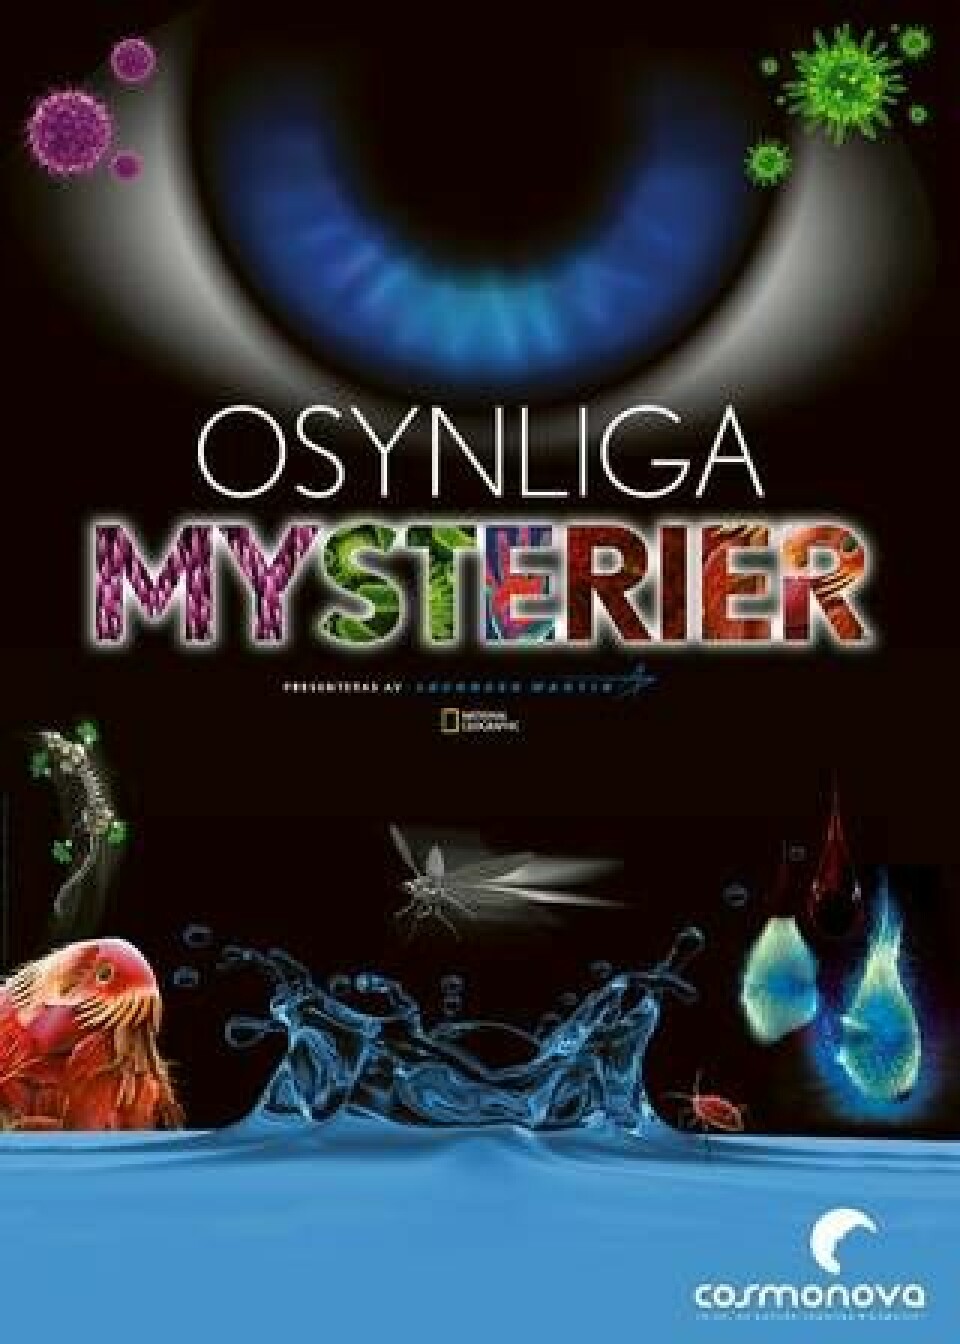 Från 15 september visas ”Osynliga mysterier” på Cosmonova i Stockholm.